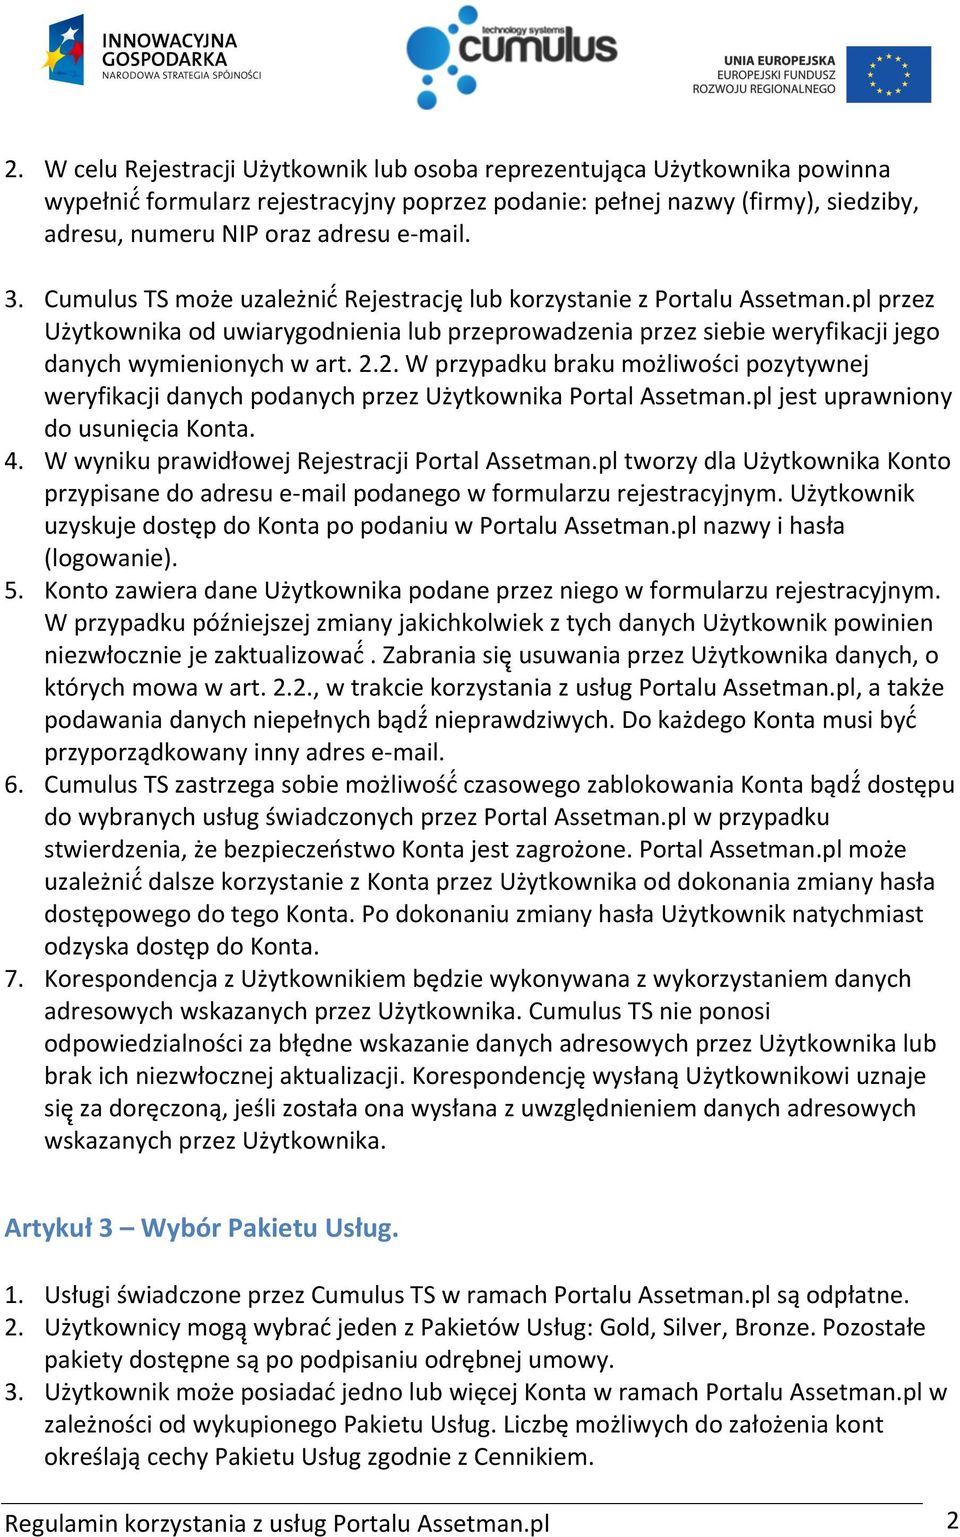 2. W przypadku braku możliwości pozytywnej weryfikacji danych podanych przez Użytkownika Portal Assetman.pl jest uprawniony do usunięcia Konta. 4. W wyniku prawidłowej Rejestracji Portal Assetman.